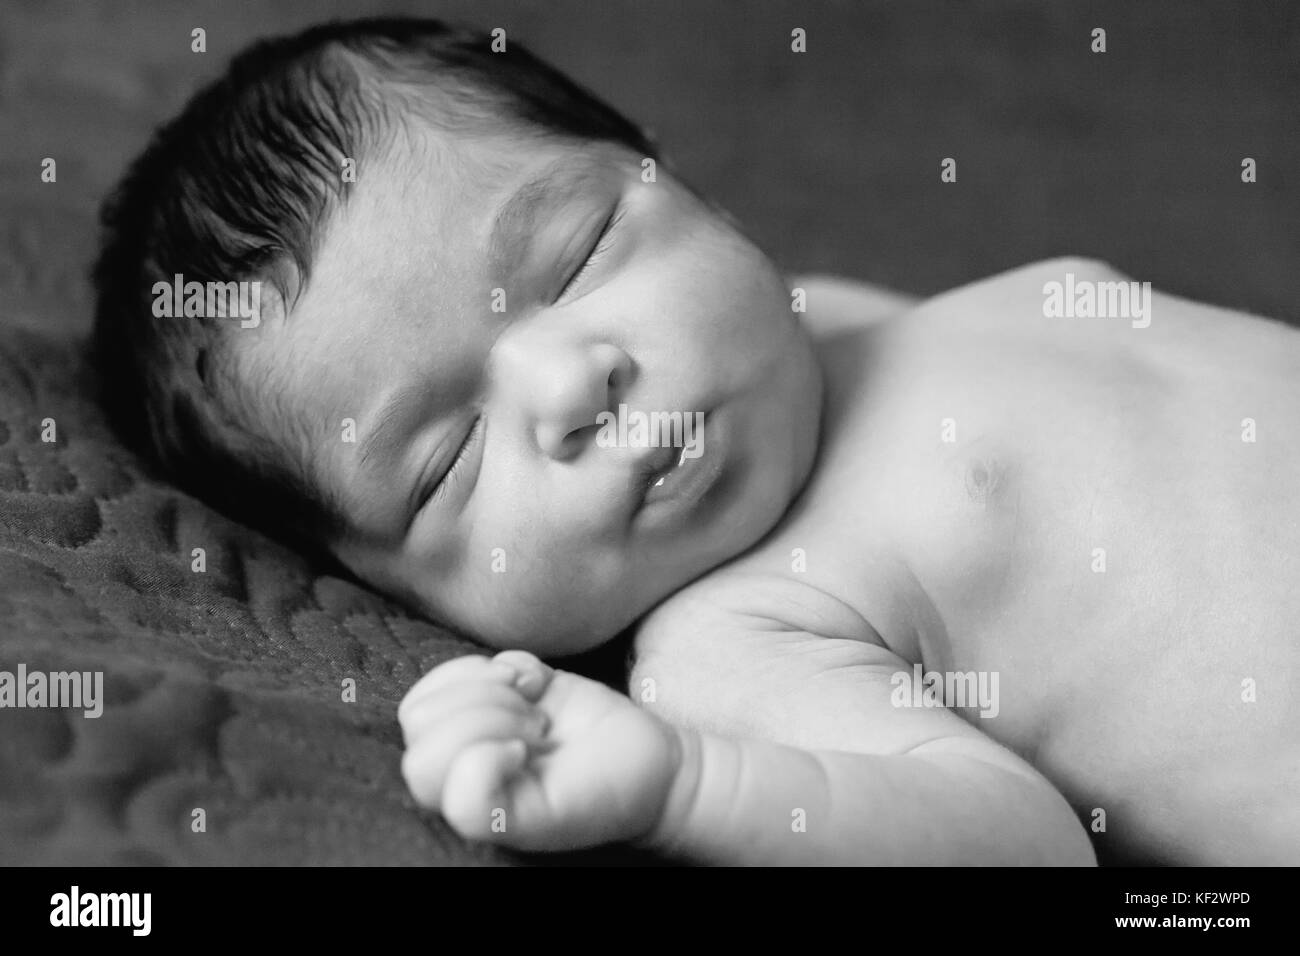 Gros plan portrait d'un mignon deux semaines nouveau-né bébé fille sans vêtements, nu ou nu, dormir paisiblement dans le lit / nouveau-né bébé fille dormir Banque D'Images